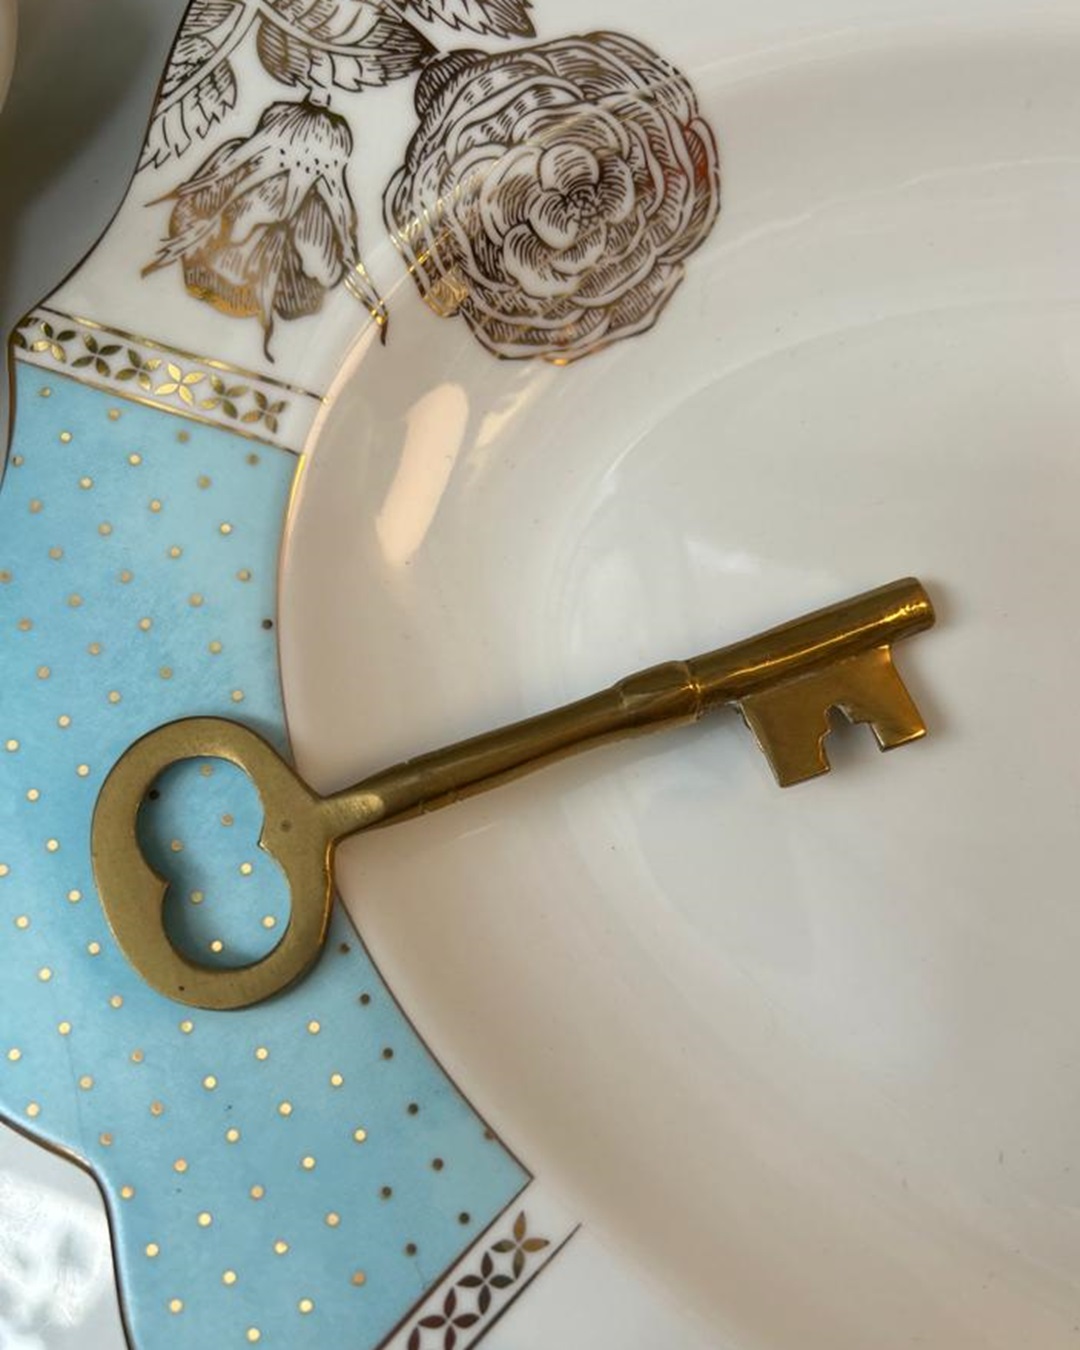 Brass key on plate